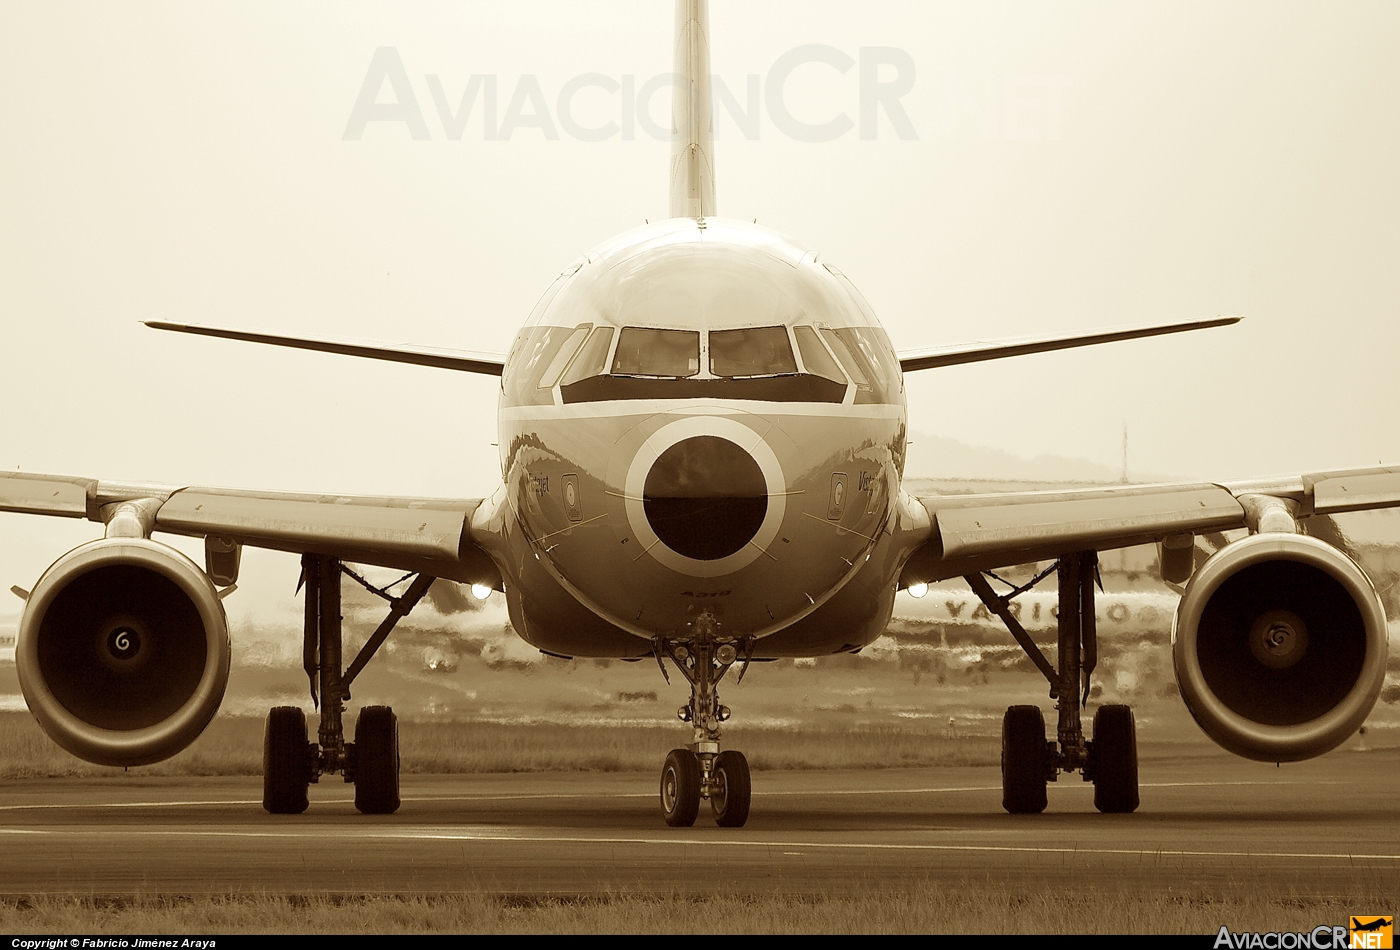 N745VJ - Airbus A319-112 - US Airways